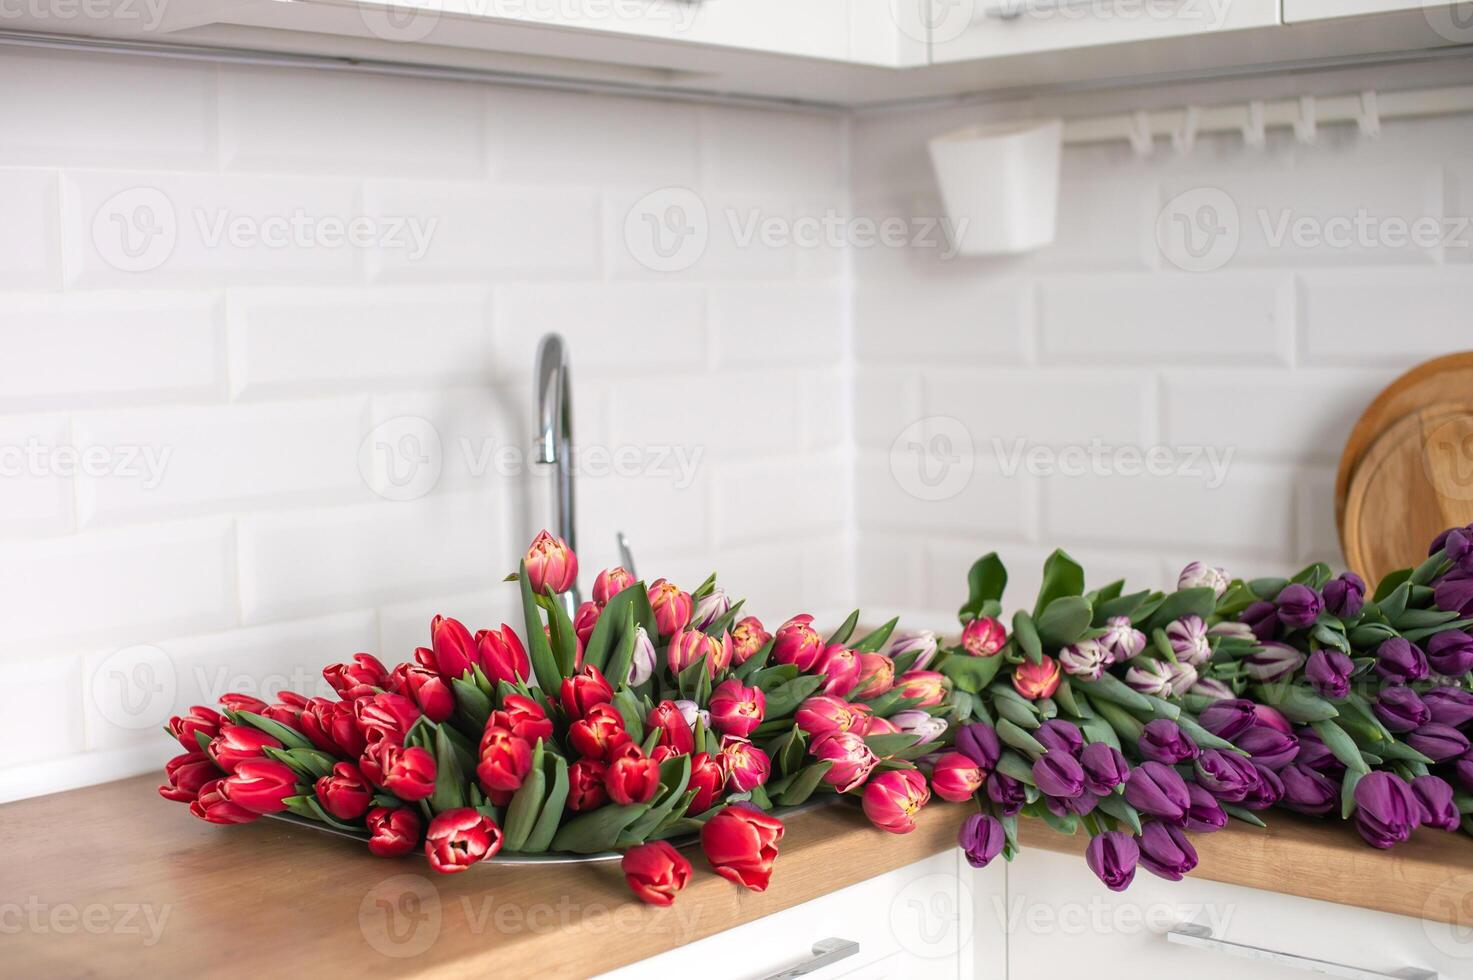 en stor siffra av tulpaner av annorlunda färger lögner på de tabell i de kök. blommor i de handfat foto